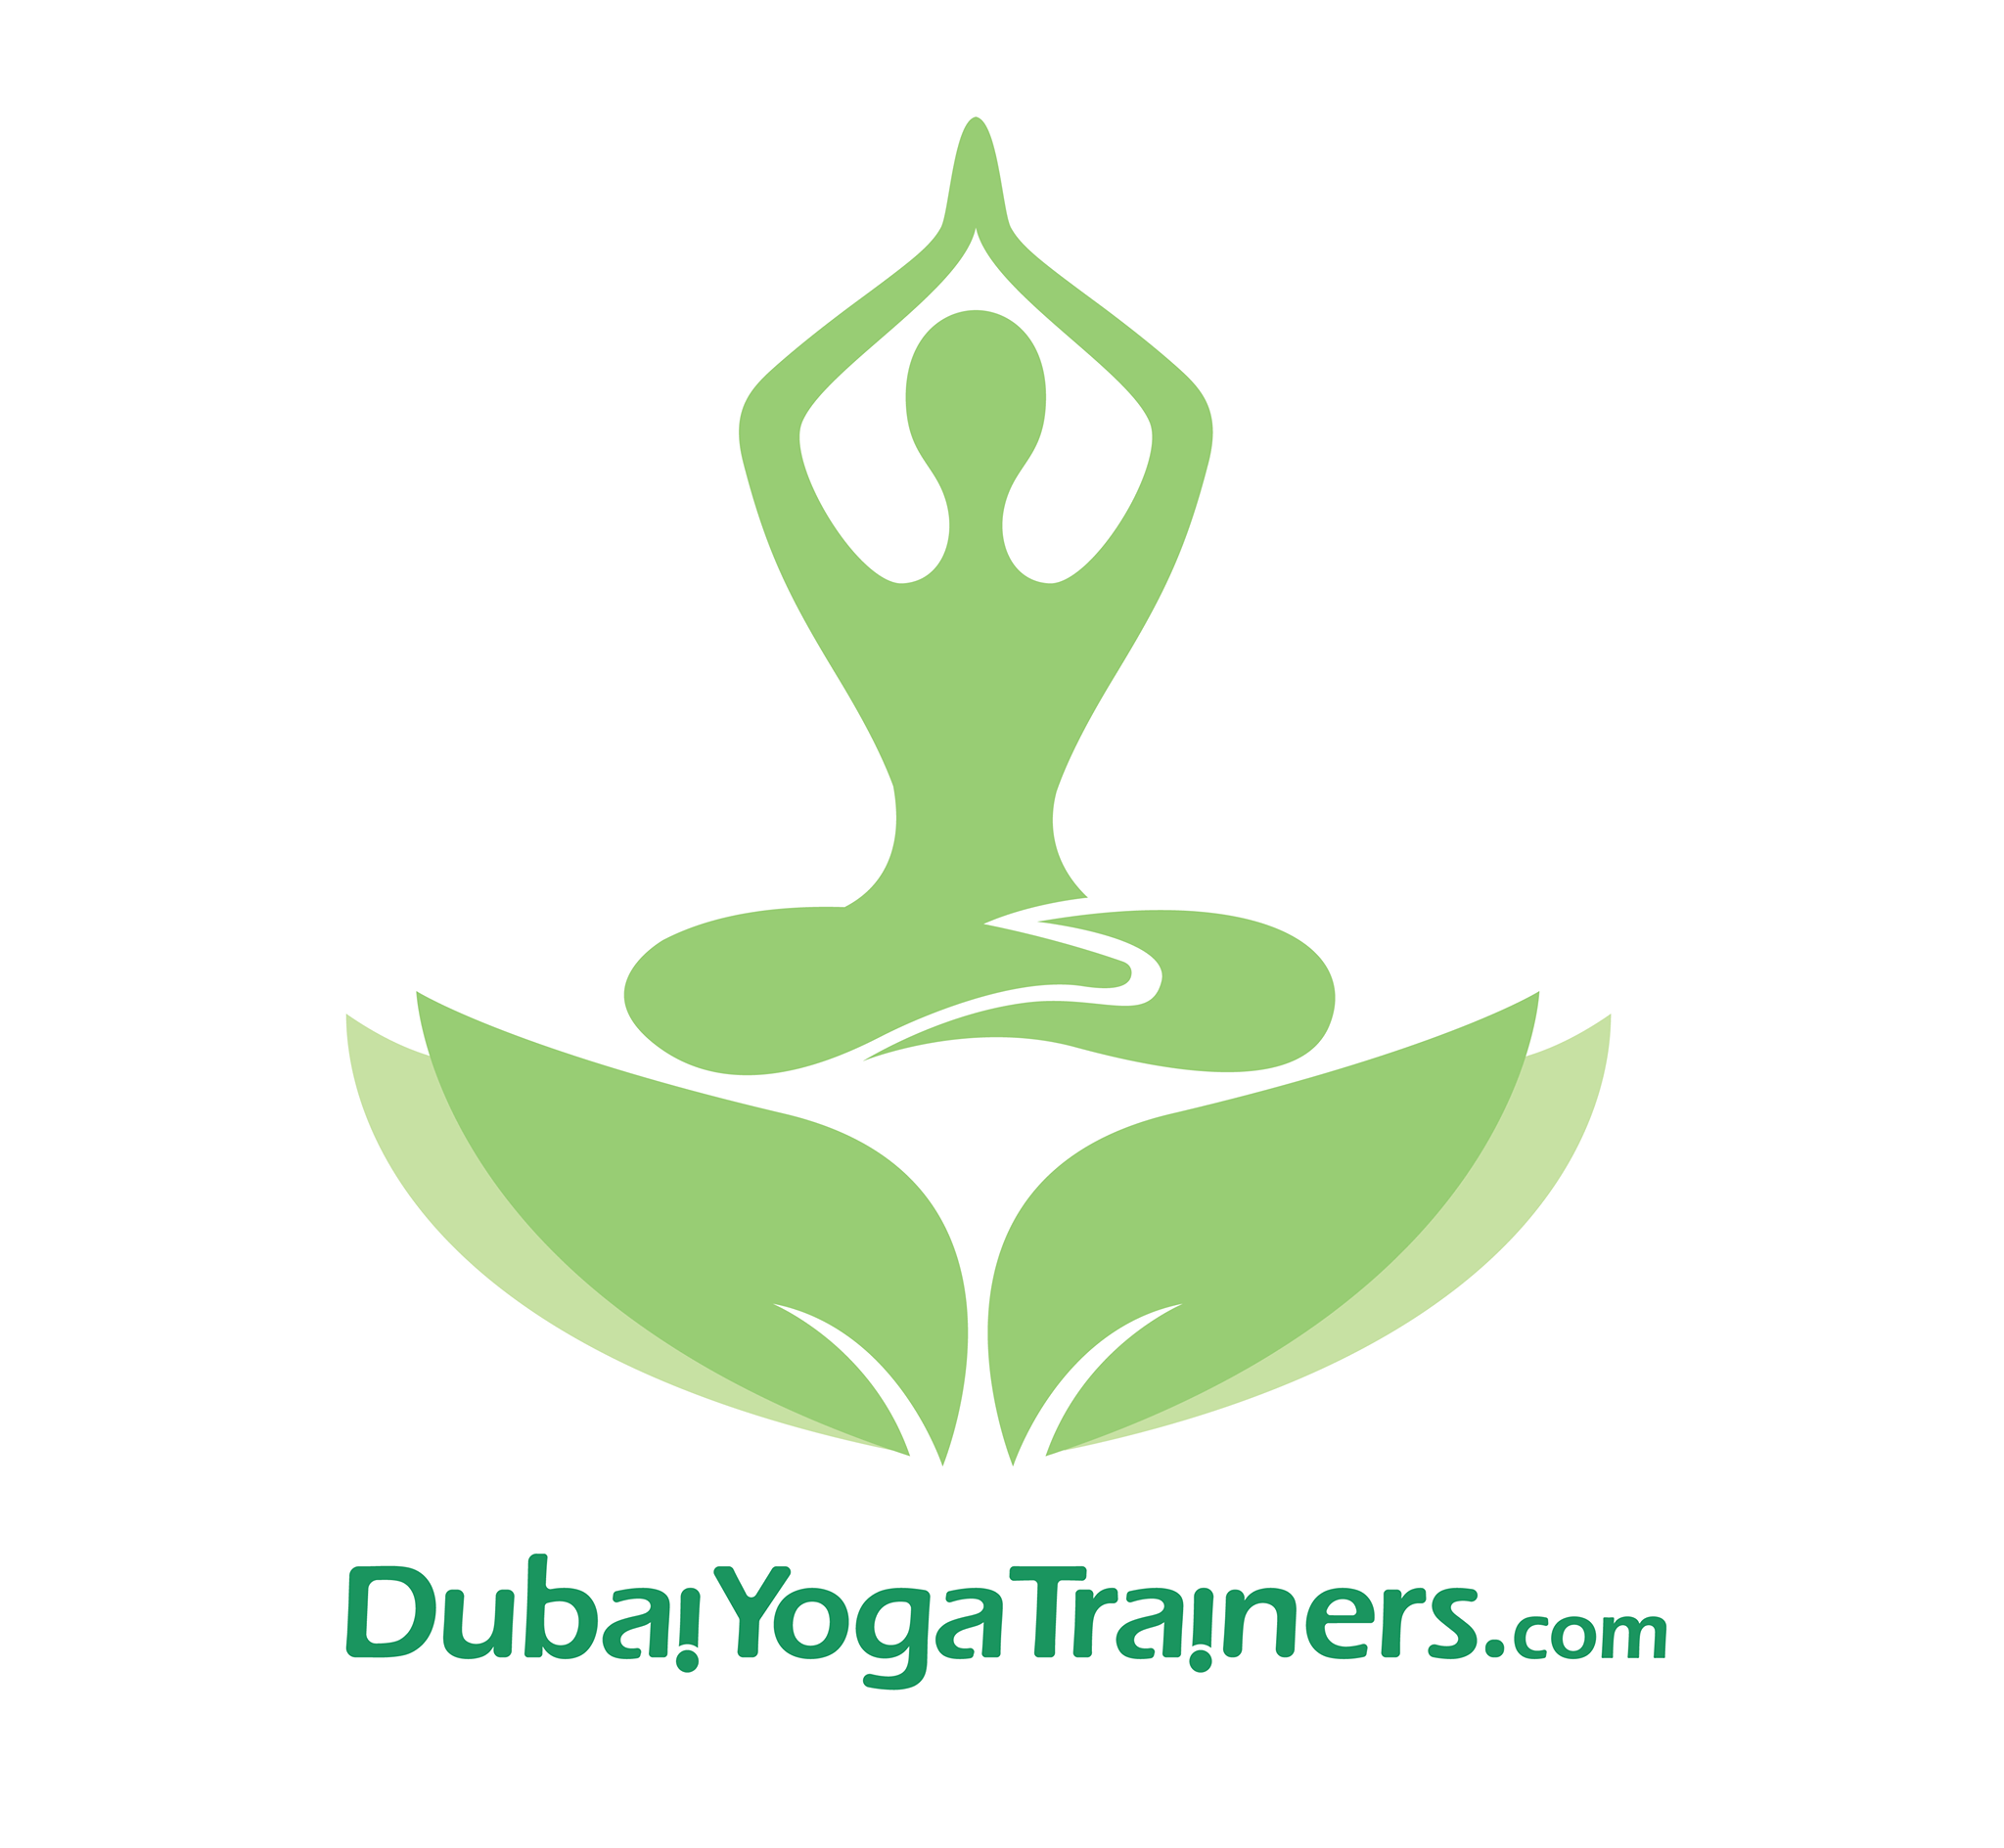 Dubai Yoga Trainers Logo